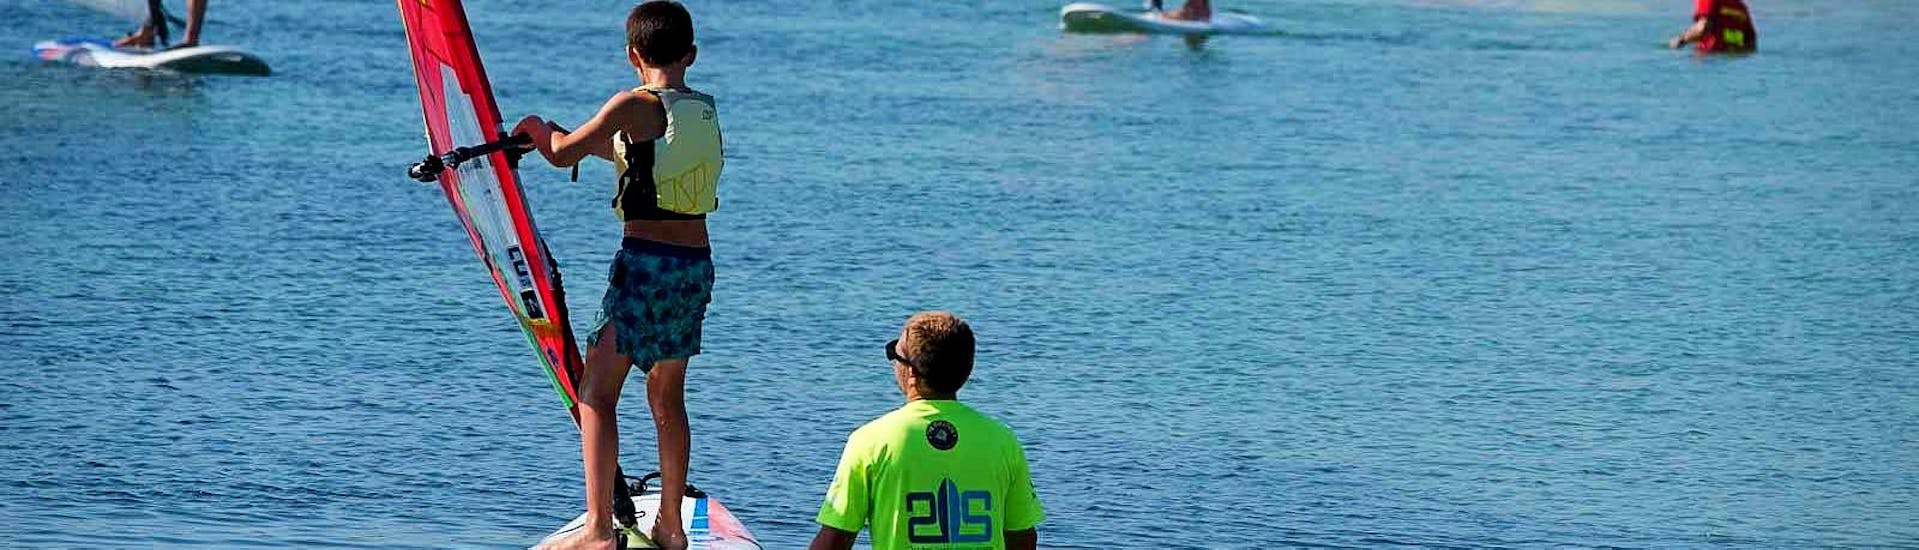 Cours de windsurf à Isuledda (dès 4 ans).